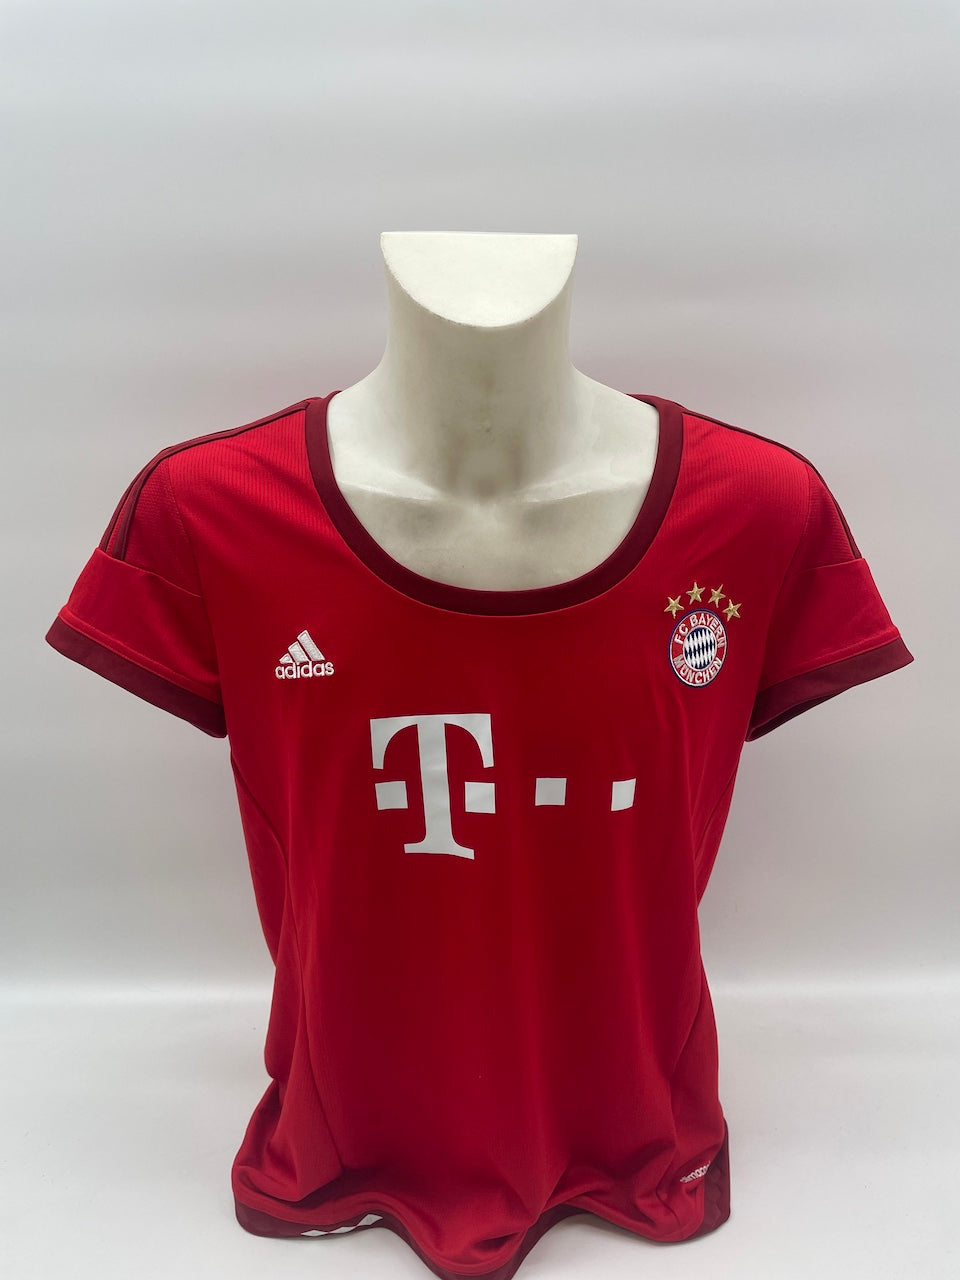 Bayern München Frauentrikot Martinez signiert Autogramme Bundesliga Adidas XL